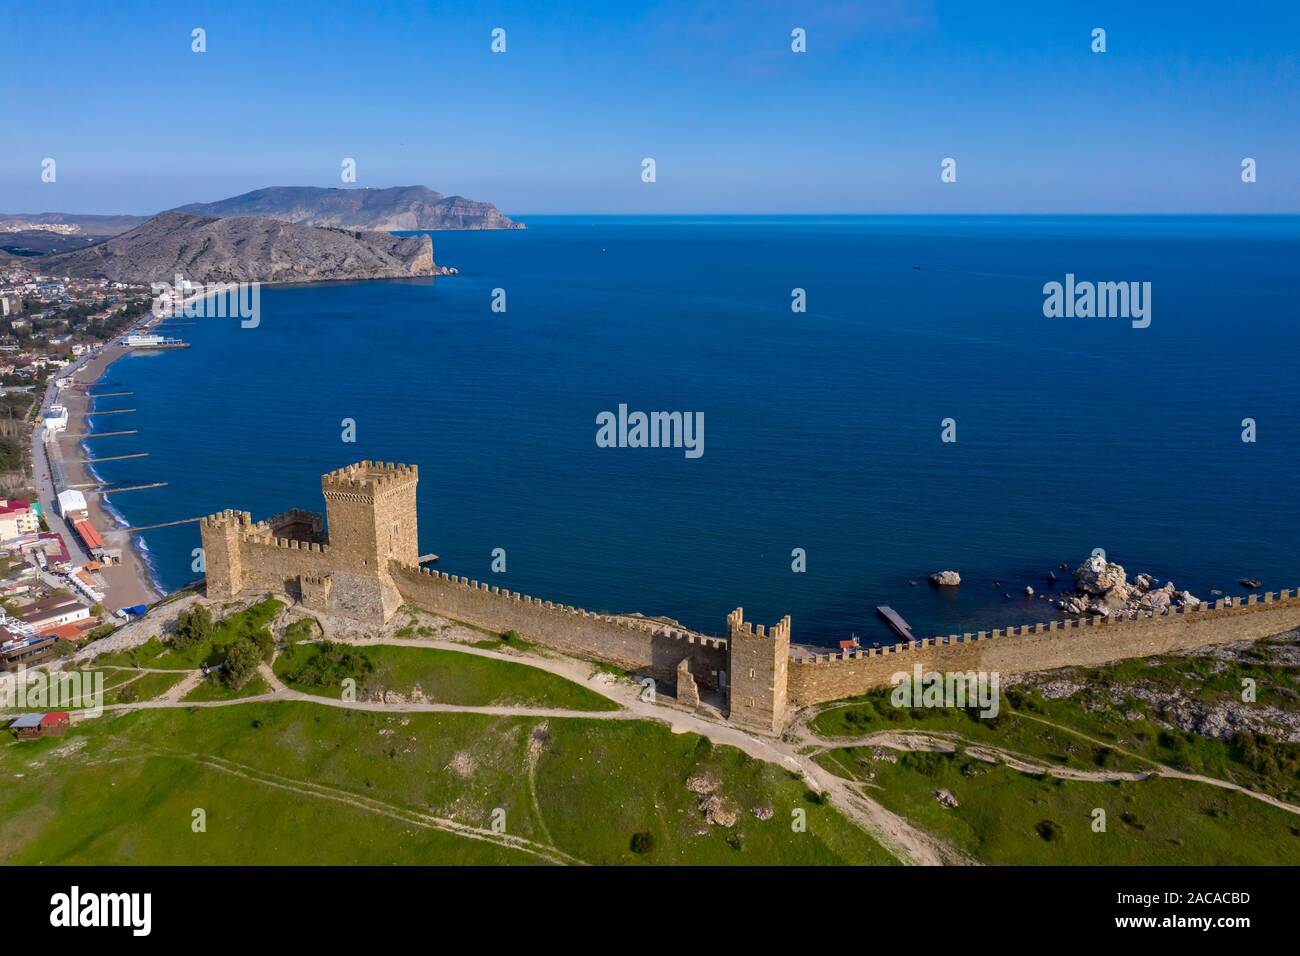 Genueser Festung in Perugia, Krim. Antenne drone erschossen. Kap Alchak und Kap Meganom sind sichtbar am Horizont Stockfoto